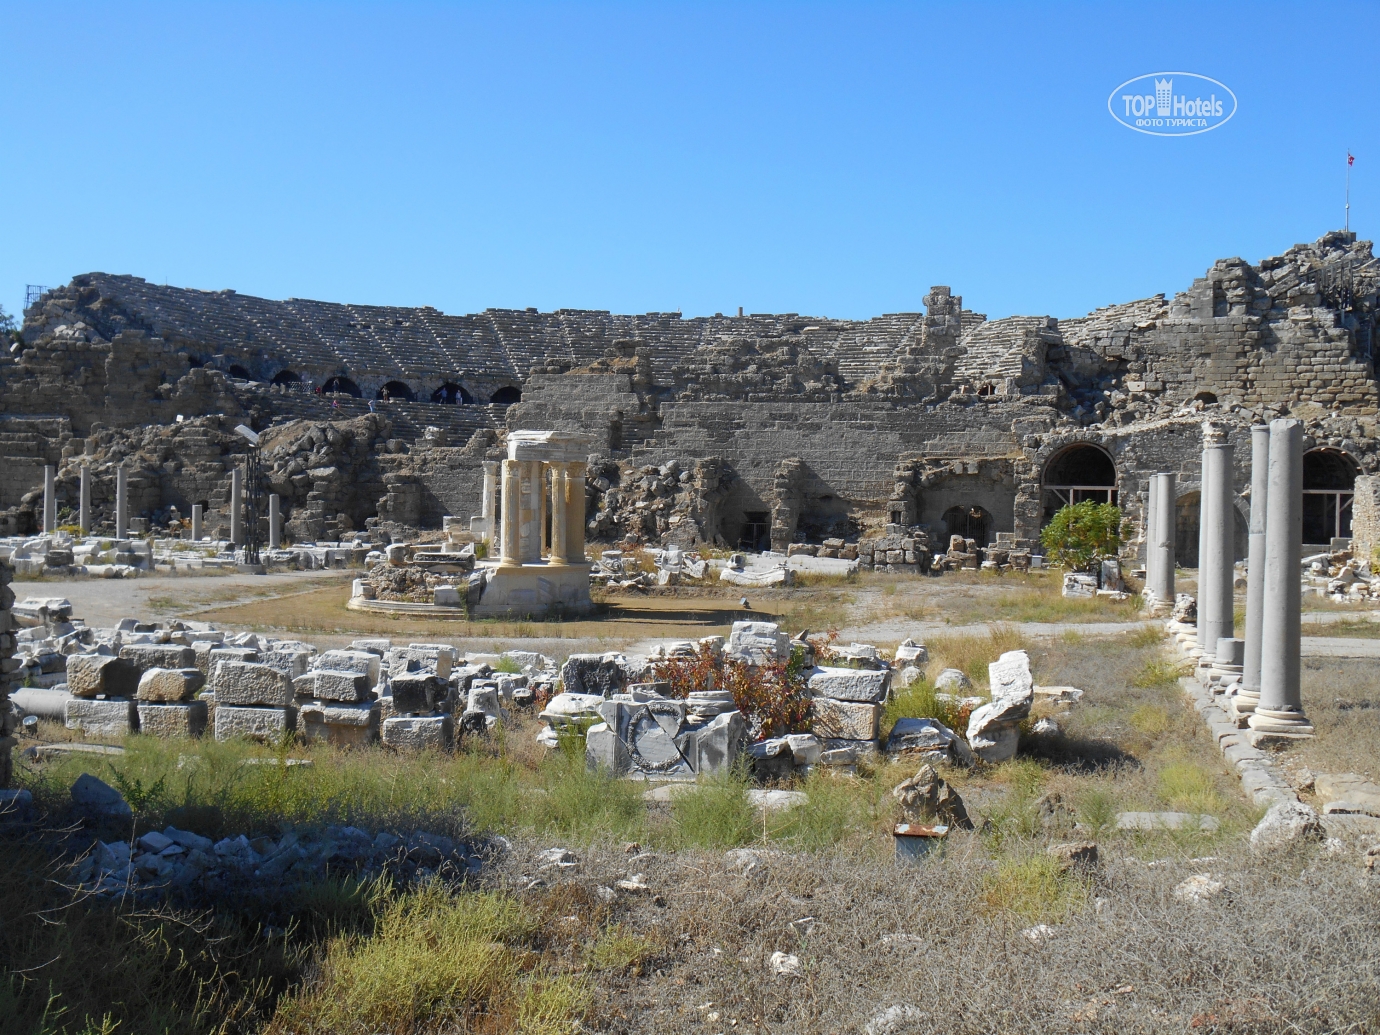 Сиде в начале мая. Руины Сиде старый город. Античный город Сиде Турция. Развалины античного Сиде. Сиде руины античного города.